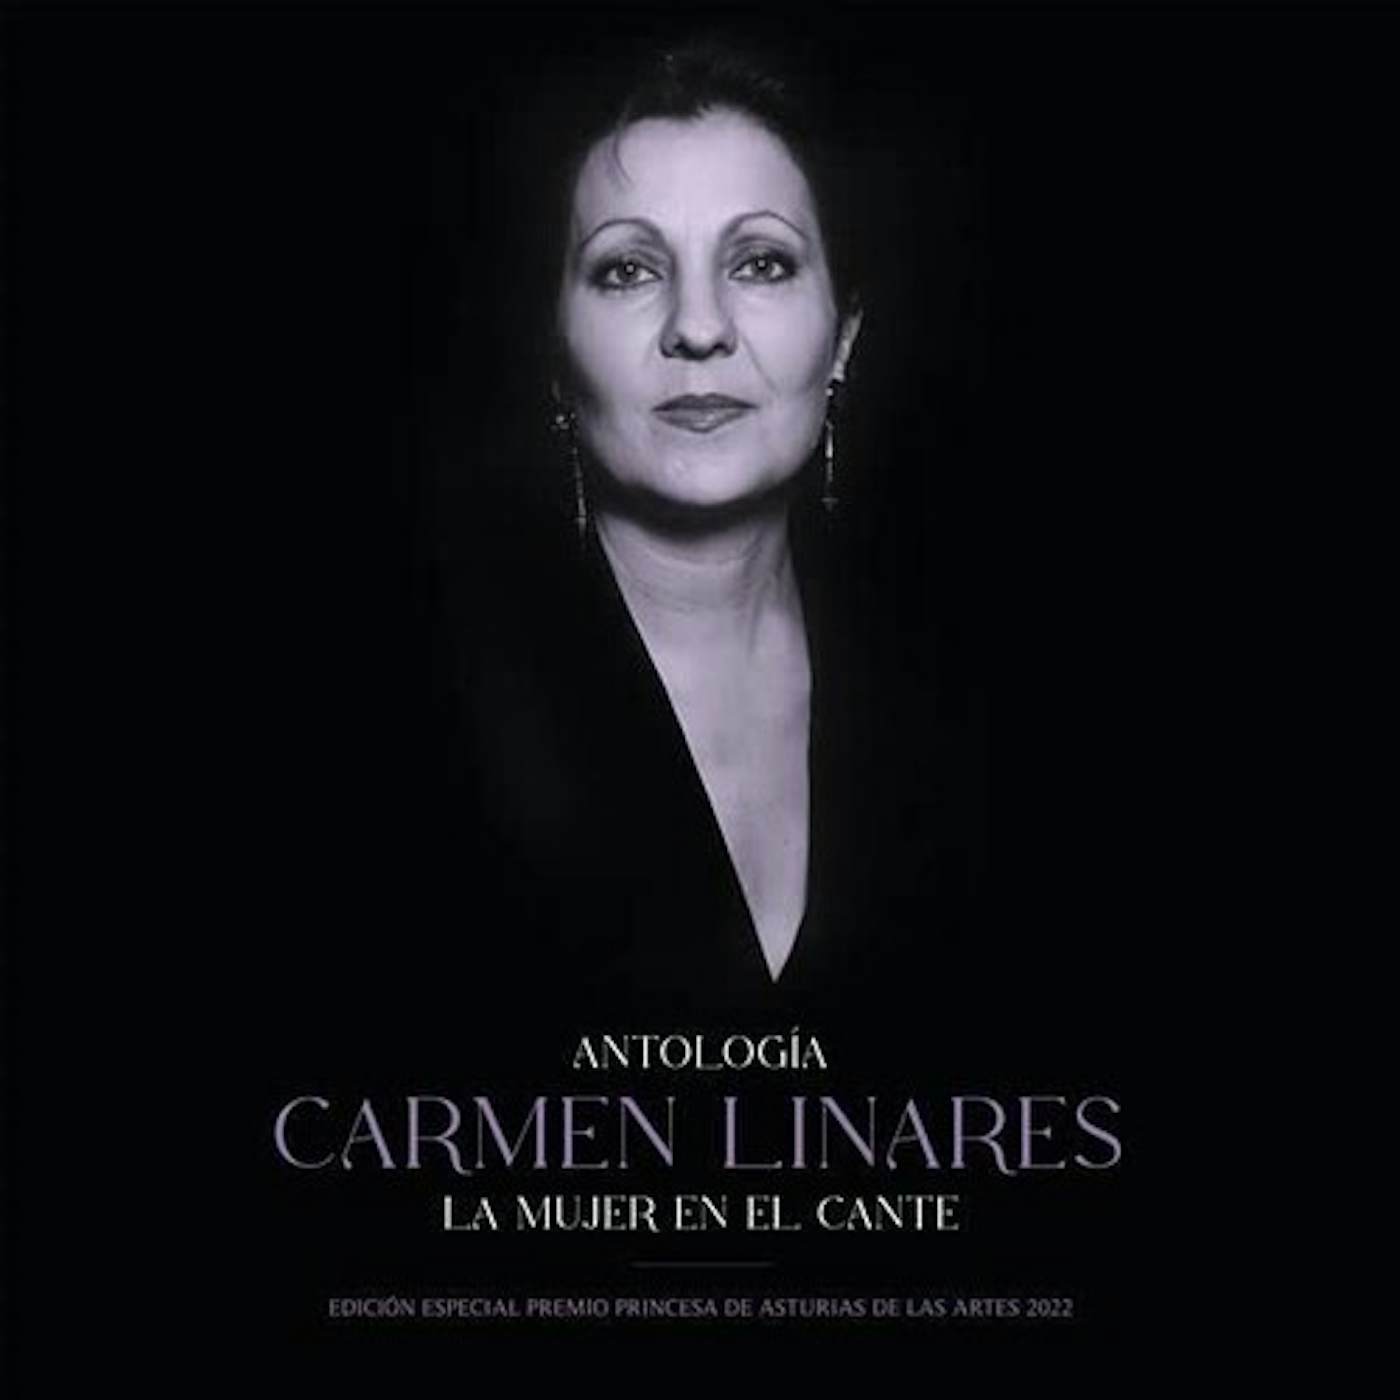 Carmen Linares ANTOLOGIA DE LA MUJER EN EL CANTE Vinyl Record